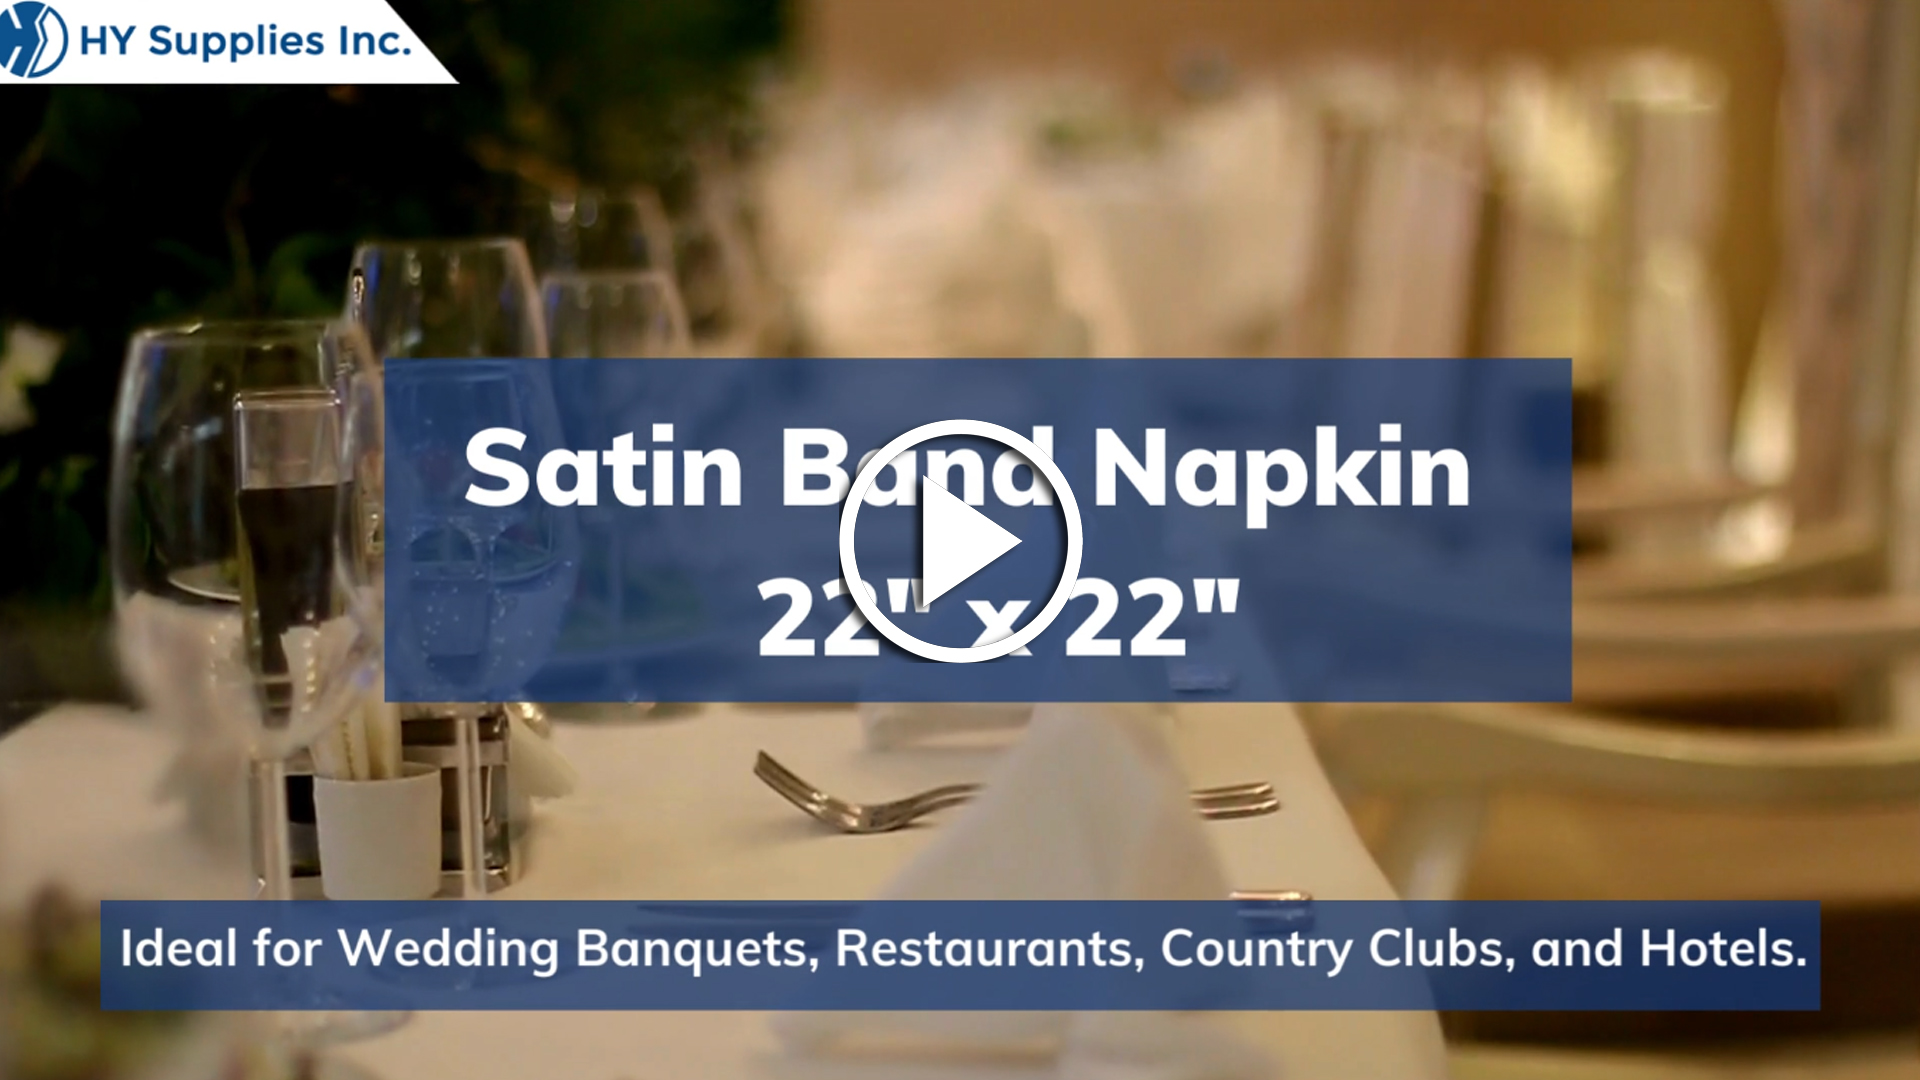 Satin Band Napkin - 22" x 22"